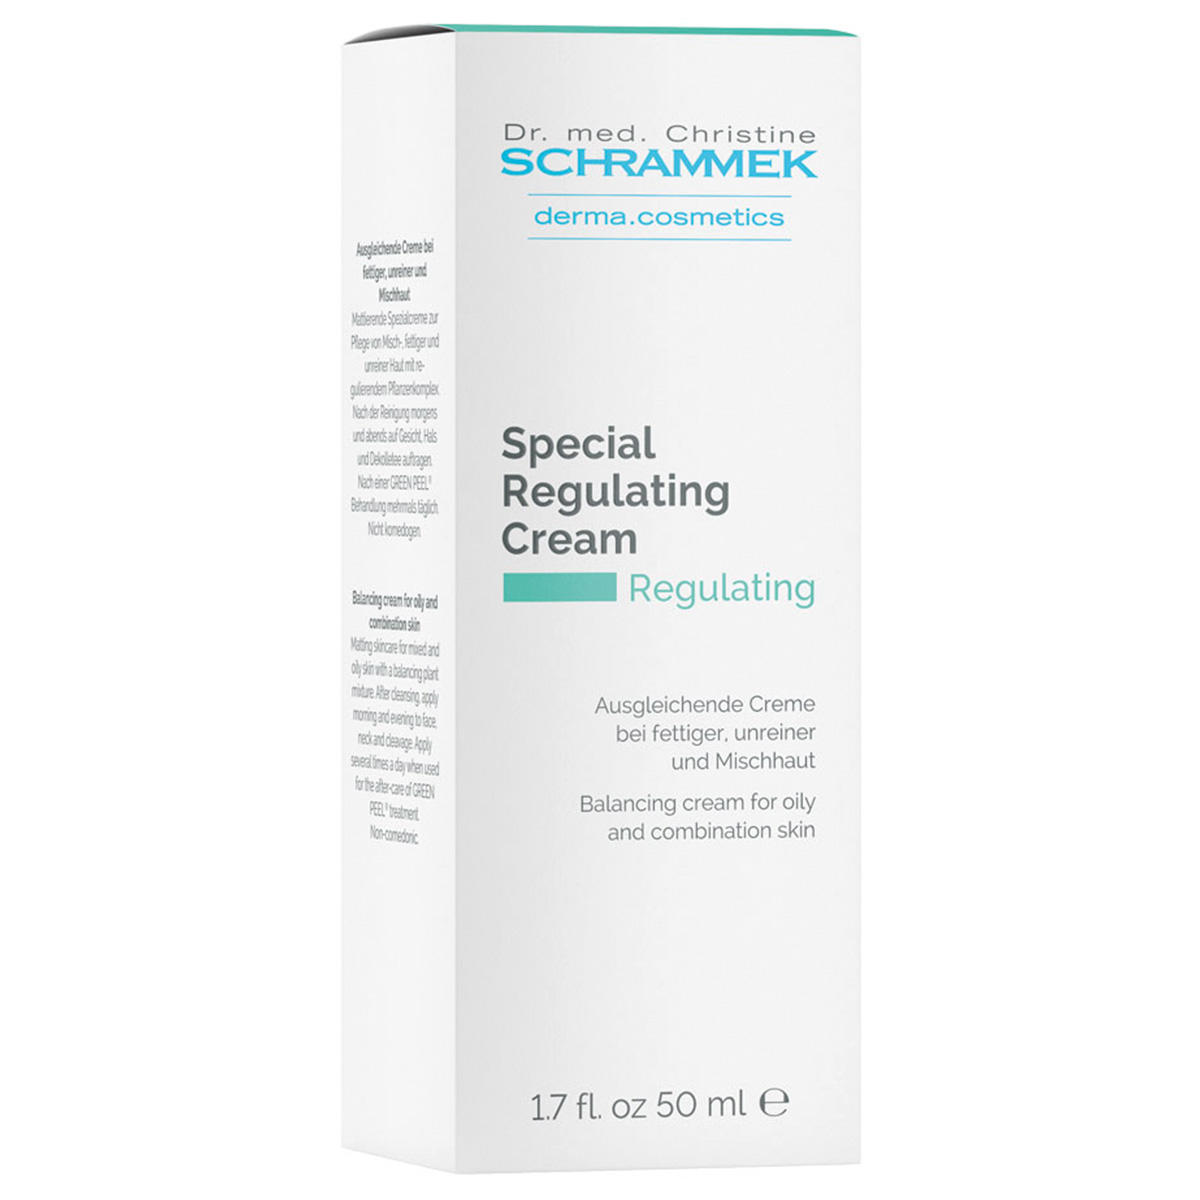 Dr. med. Christine SCHRAMMEK Regulating Special Regulating Cream 50 ml - 2